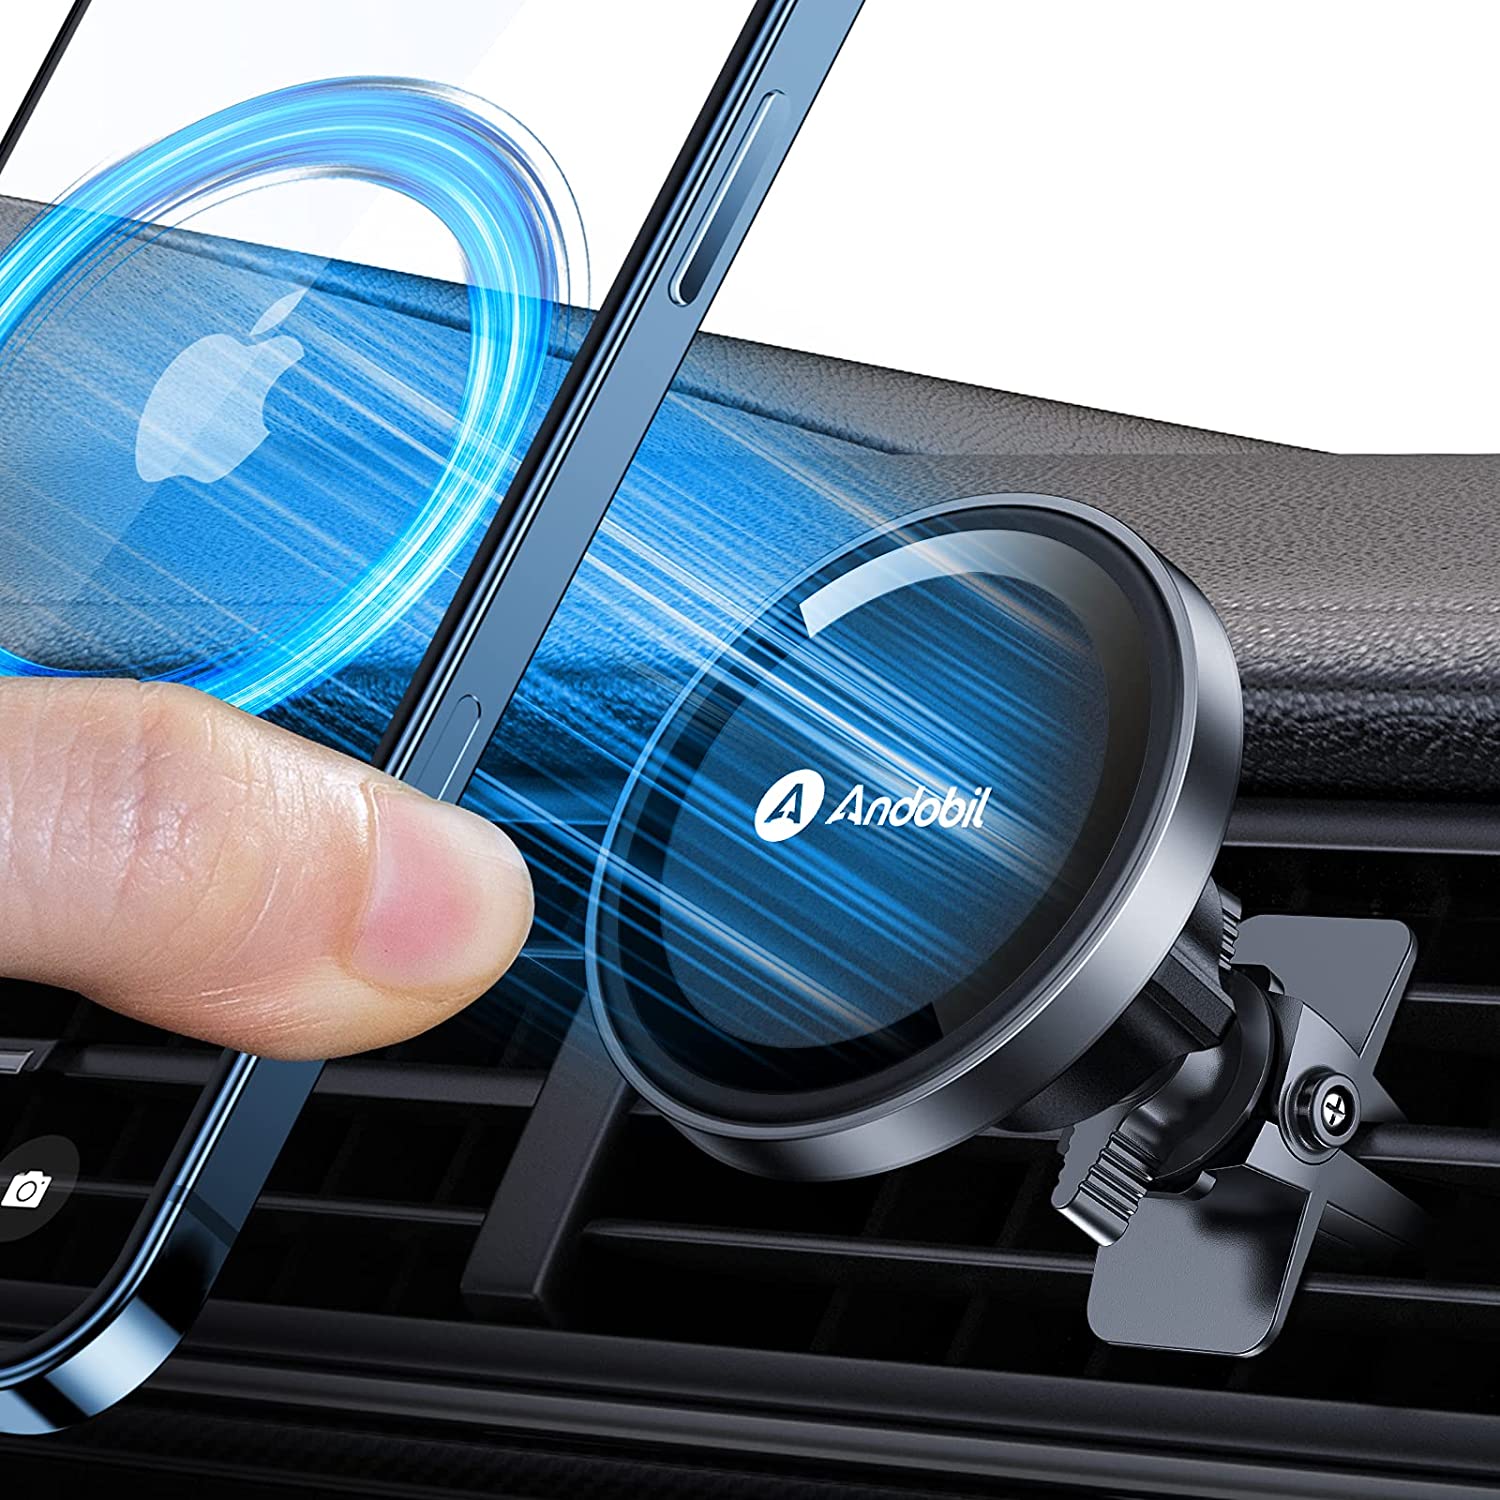 Kaufe Magnetischer Auto-Handyhalter aus Metall, zusammenklappbarer Magnet-Handyständer  im Auto, GPS-Unterstützung für iPhone Xiaomi, 360° drehbare Halterung